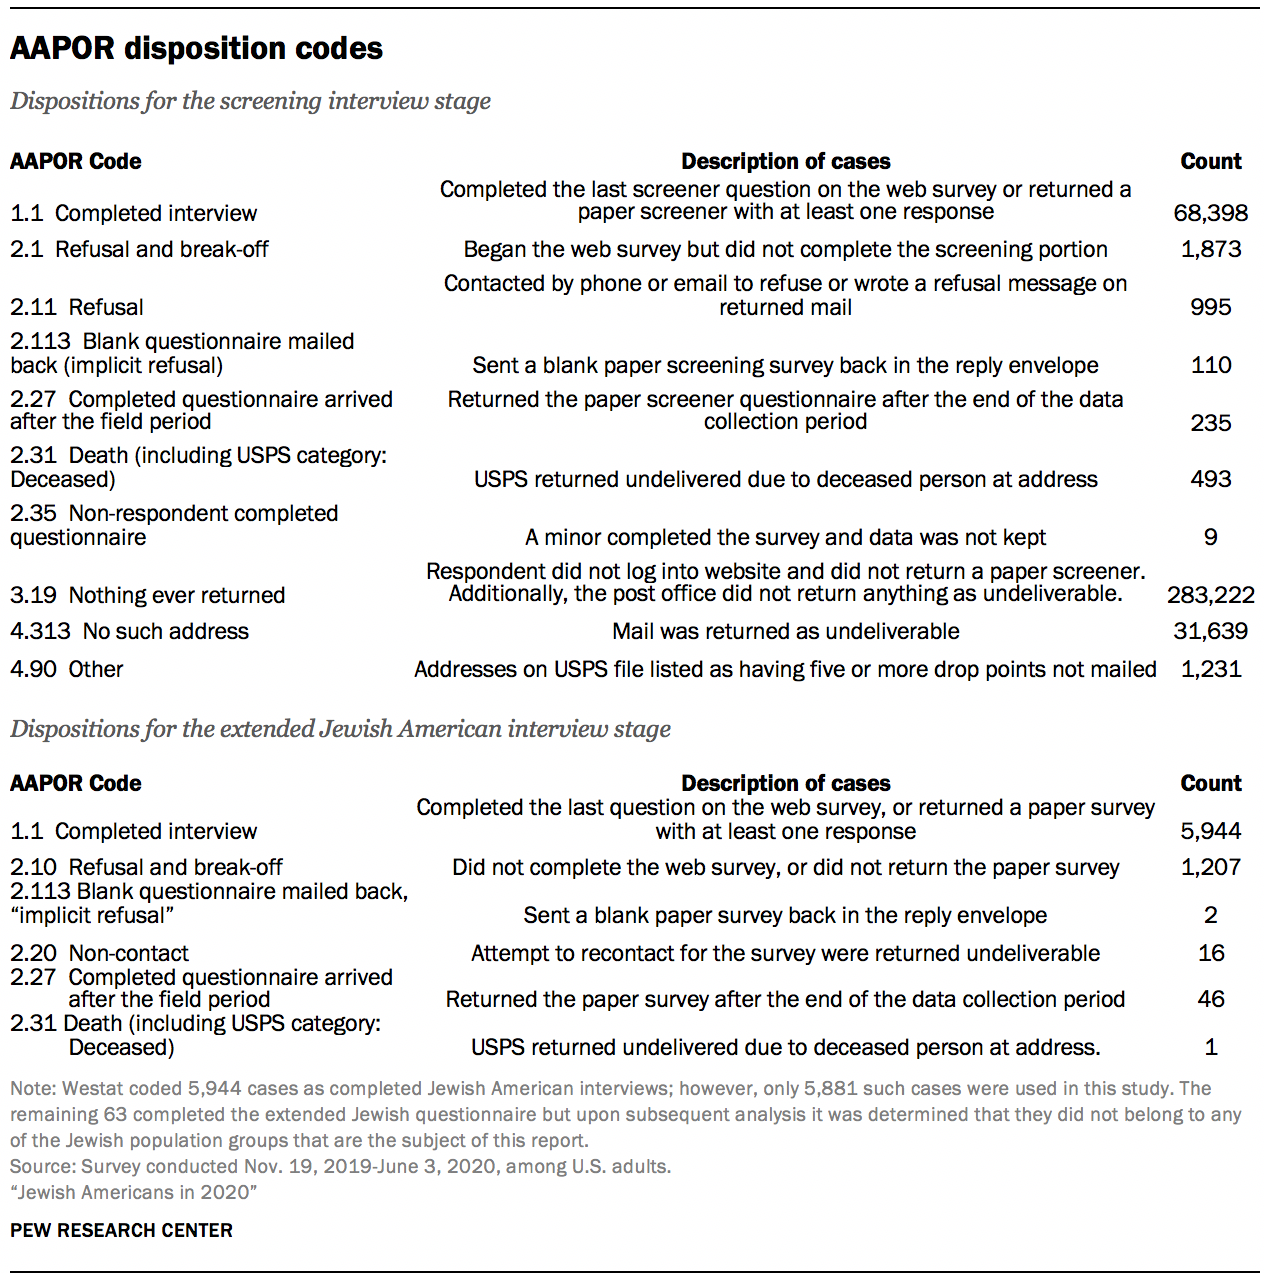 AAPOR disposition codes